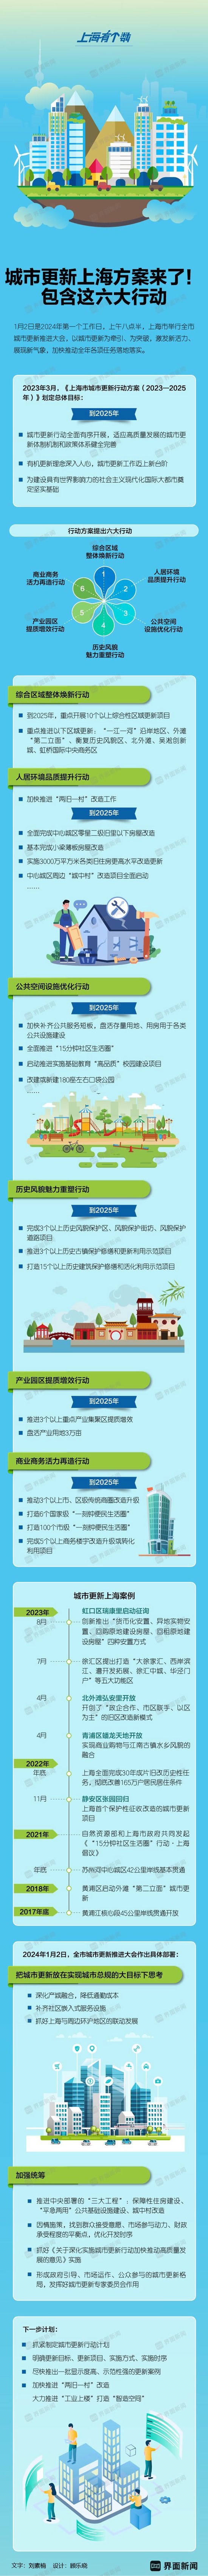 城市更新上海方案来了！包含这六大行动